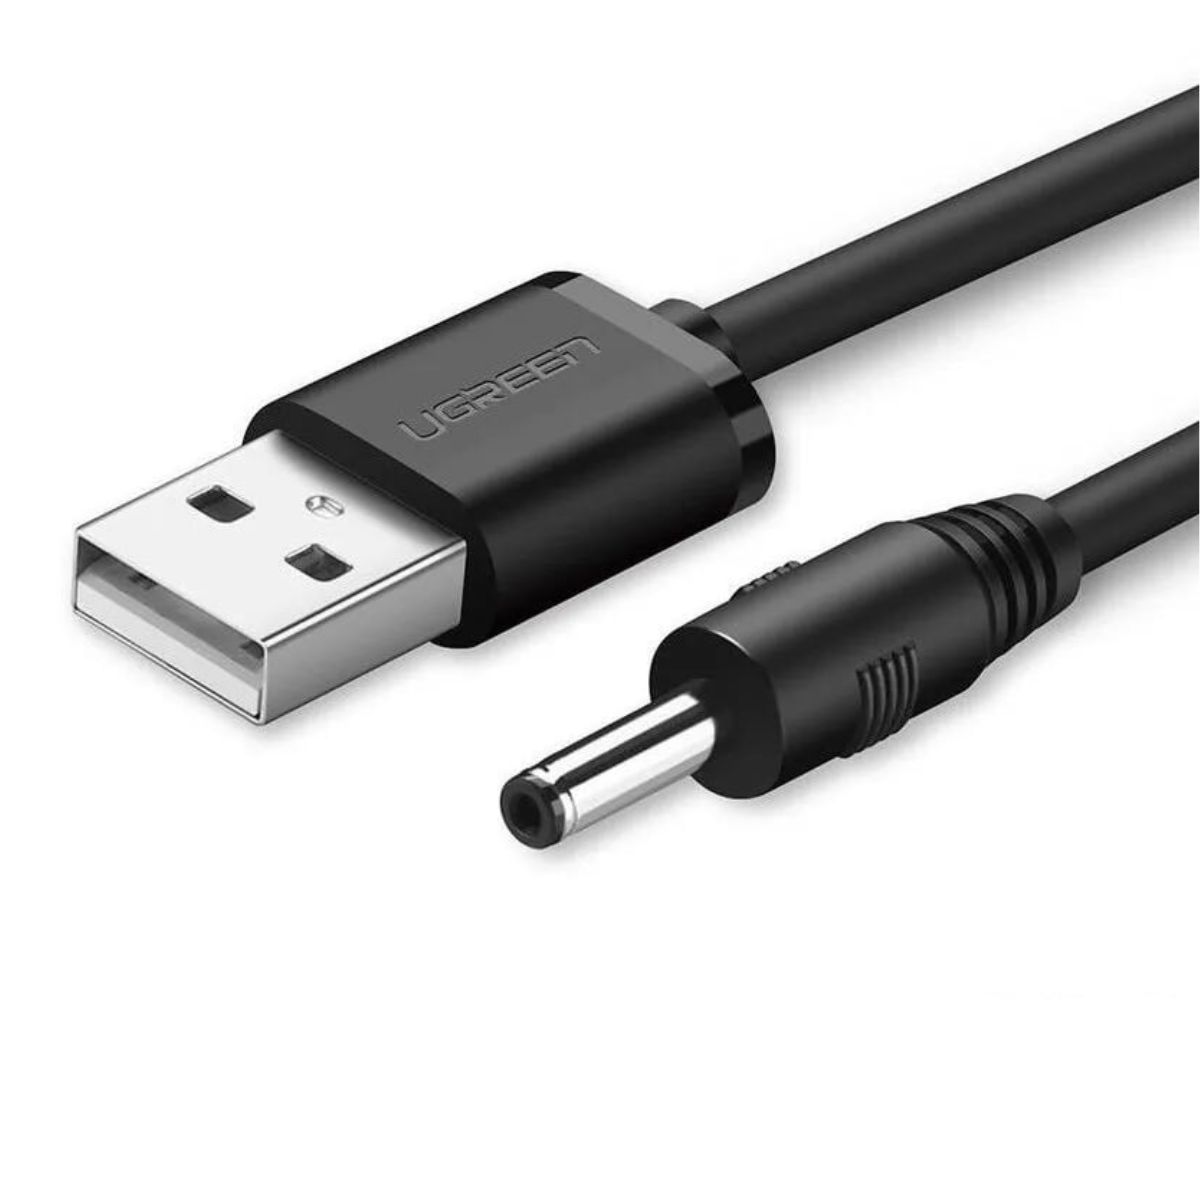 Cáp sạc dài 1m USB sang DC Ugreen 10376 US277 màu đen, hỗ trợ sạc nhanh 2A